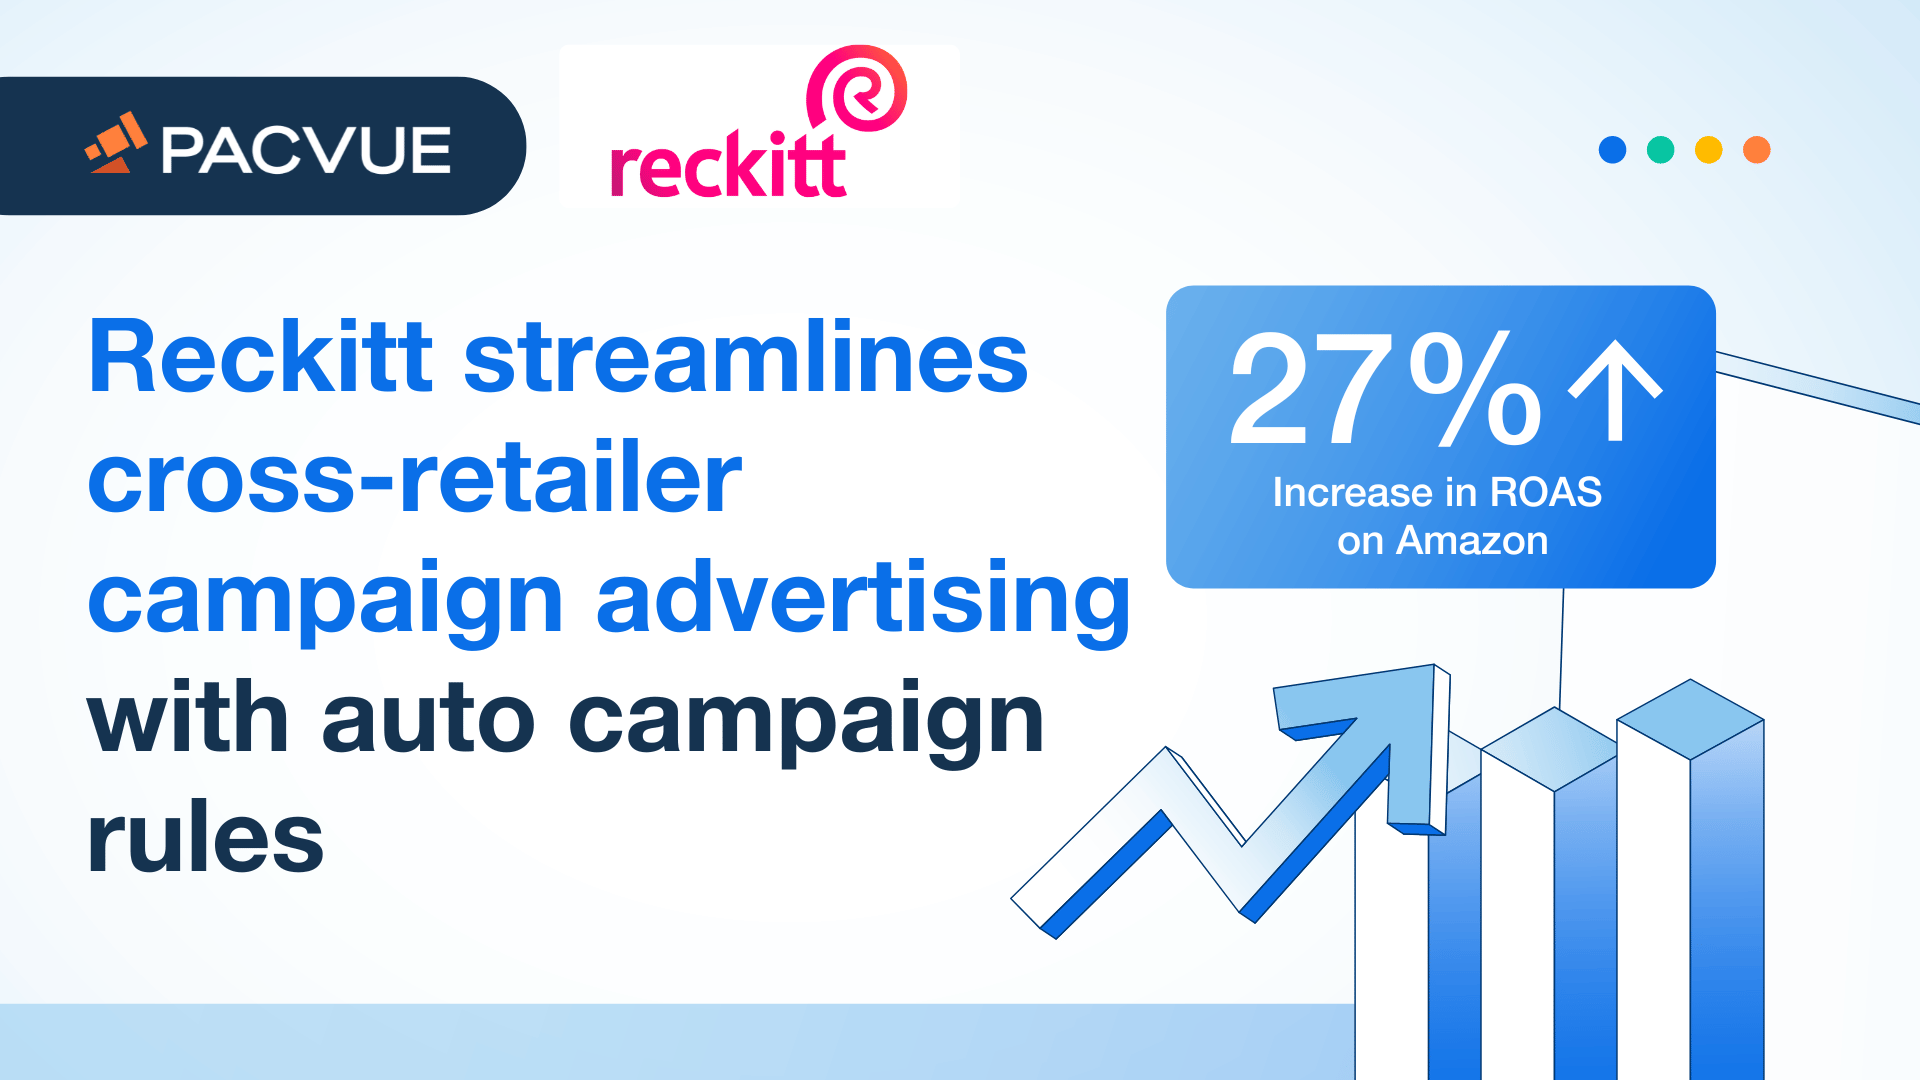 Reckitt agiliza la publicidad de campañas entre minoristas con reglas de campaña automáticas